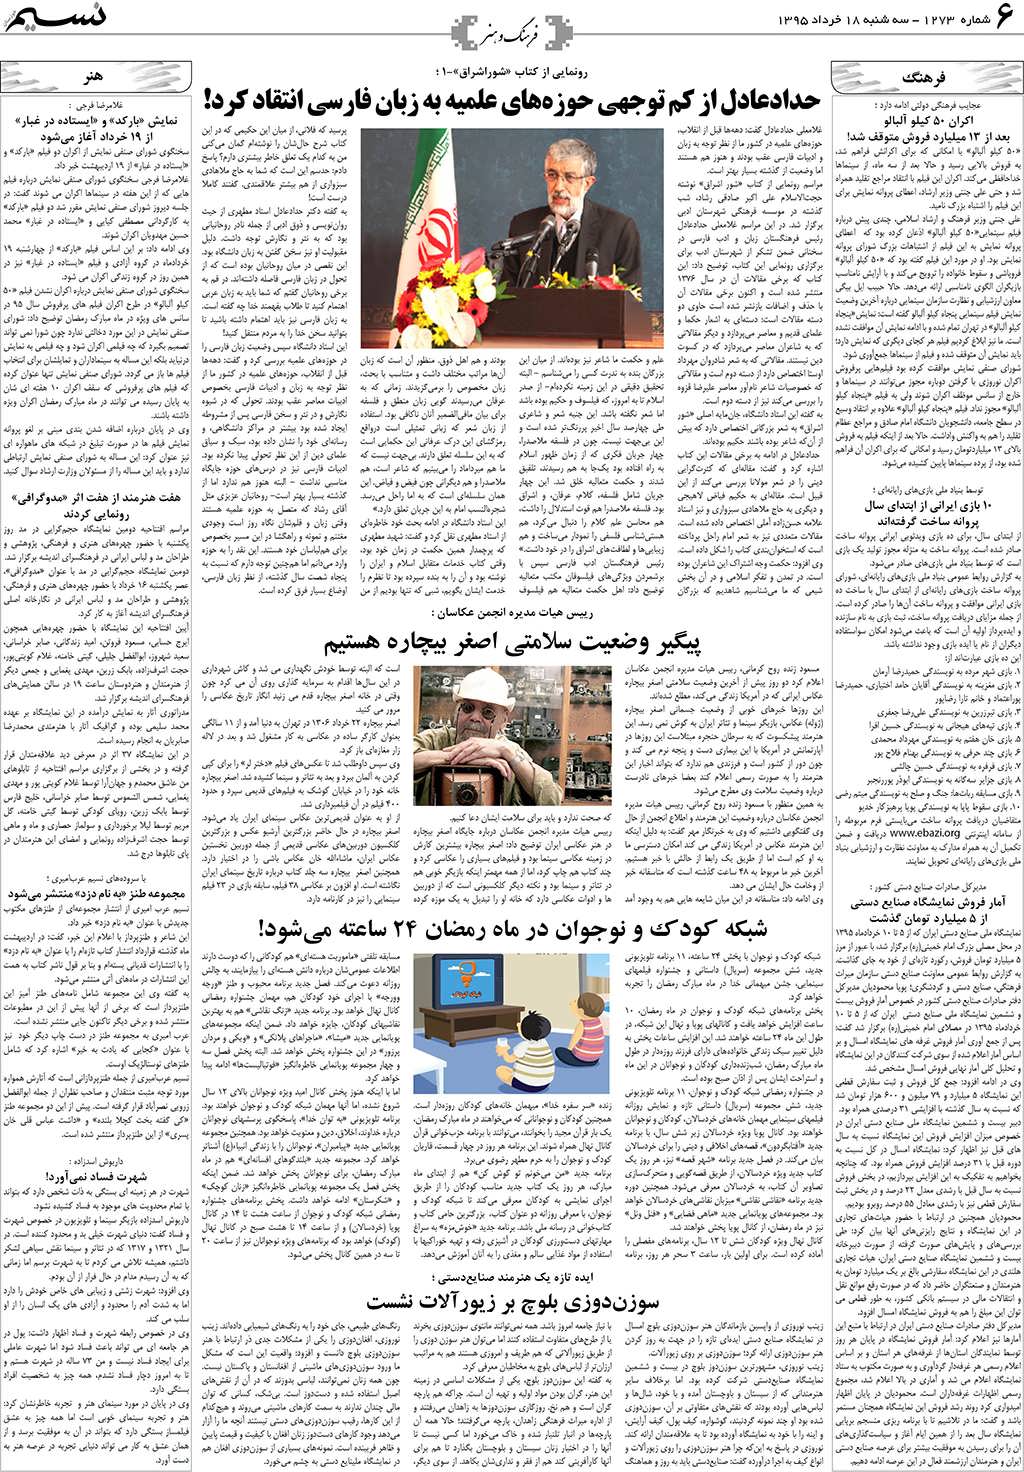 صفحه فرهنگ و هنر روزنامه نسیم شماره 1273